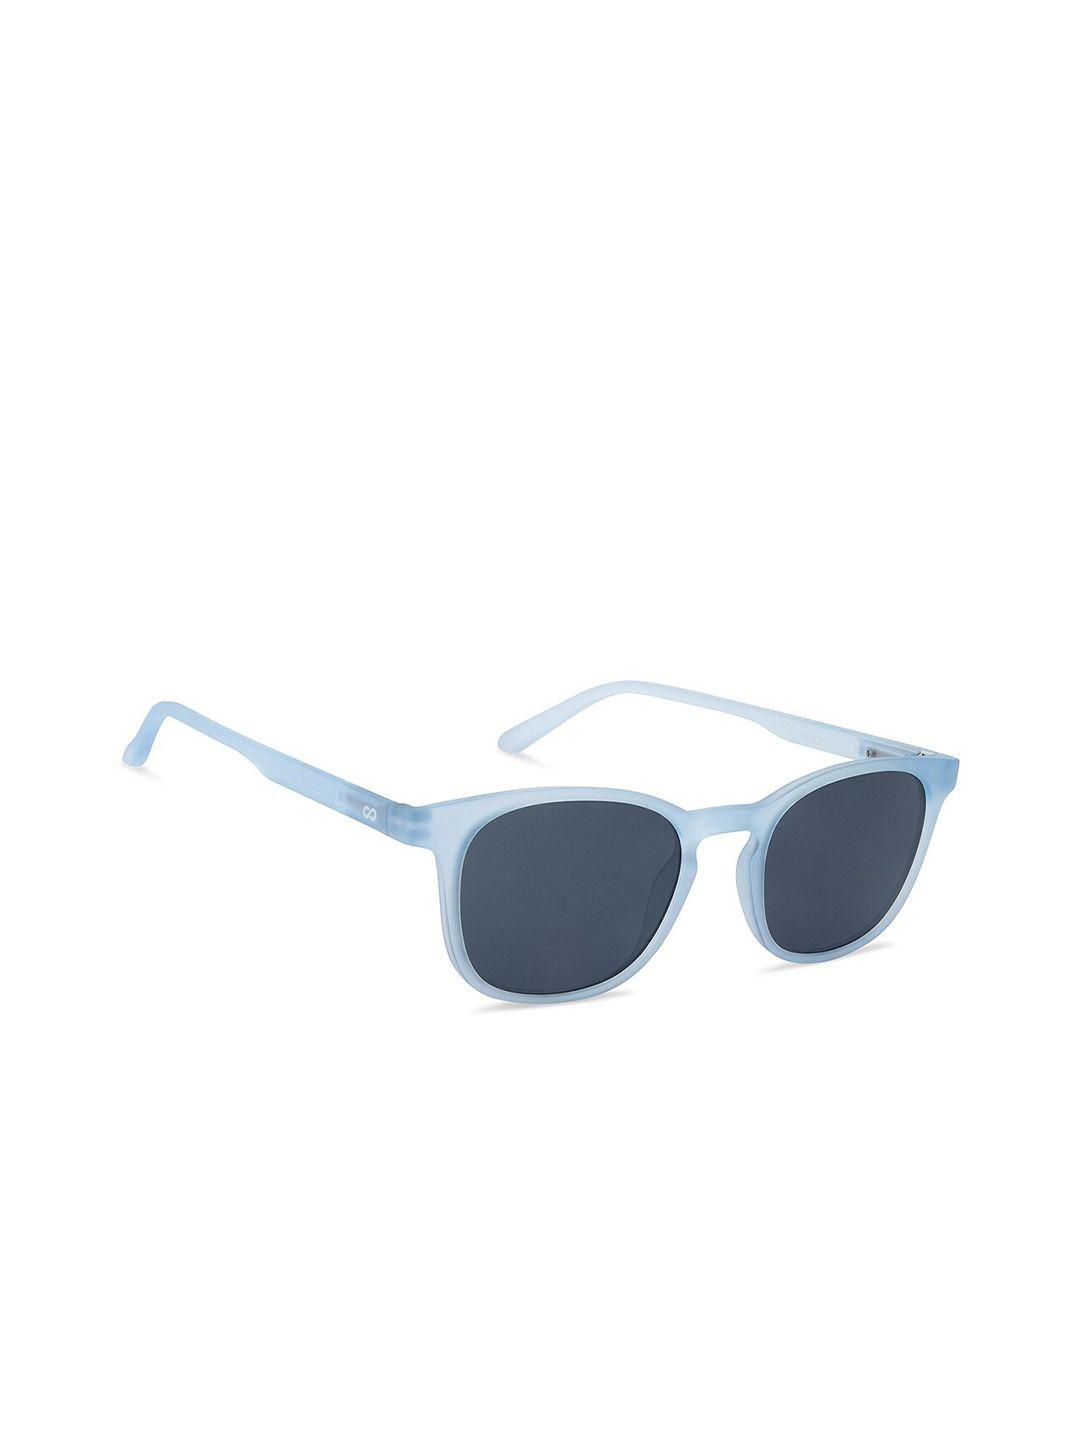 lenskart hustlr unisex wayfarer sunglasses with polarised and uv protected lens 210613